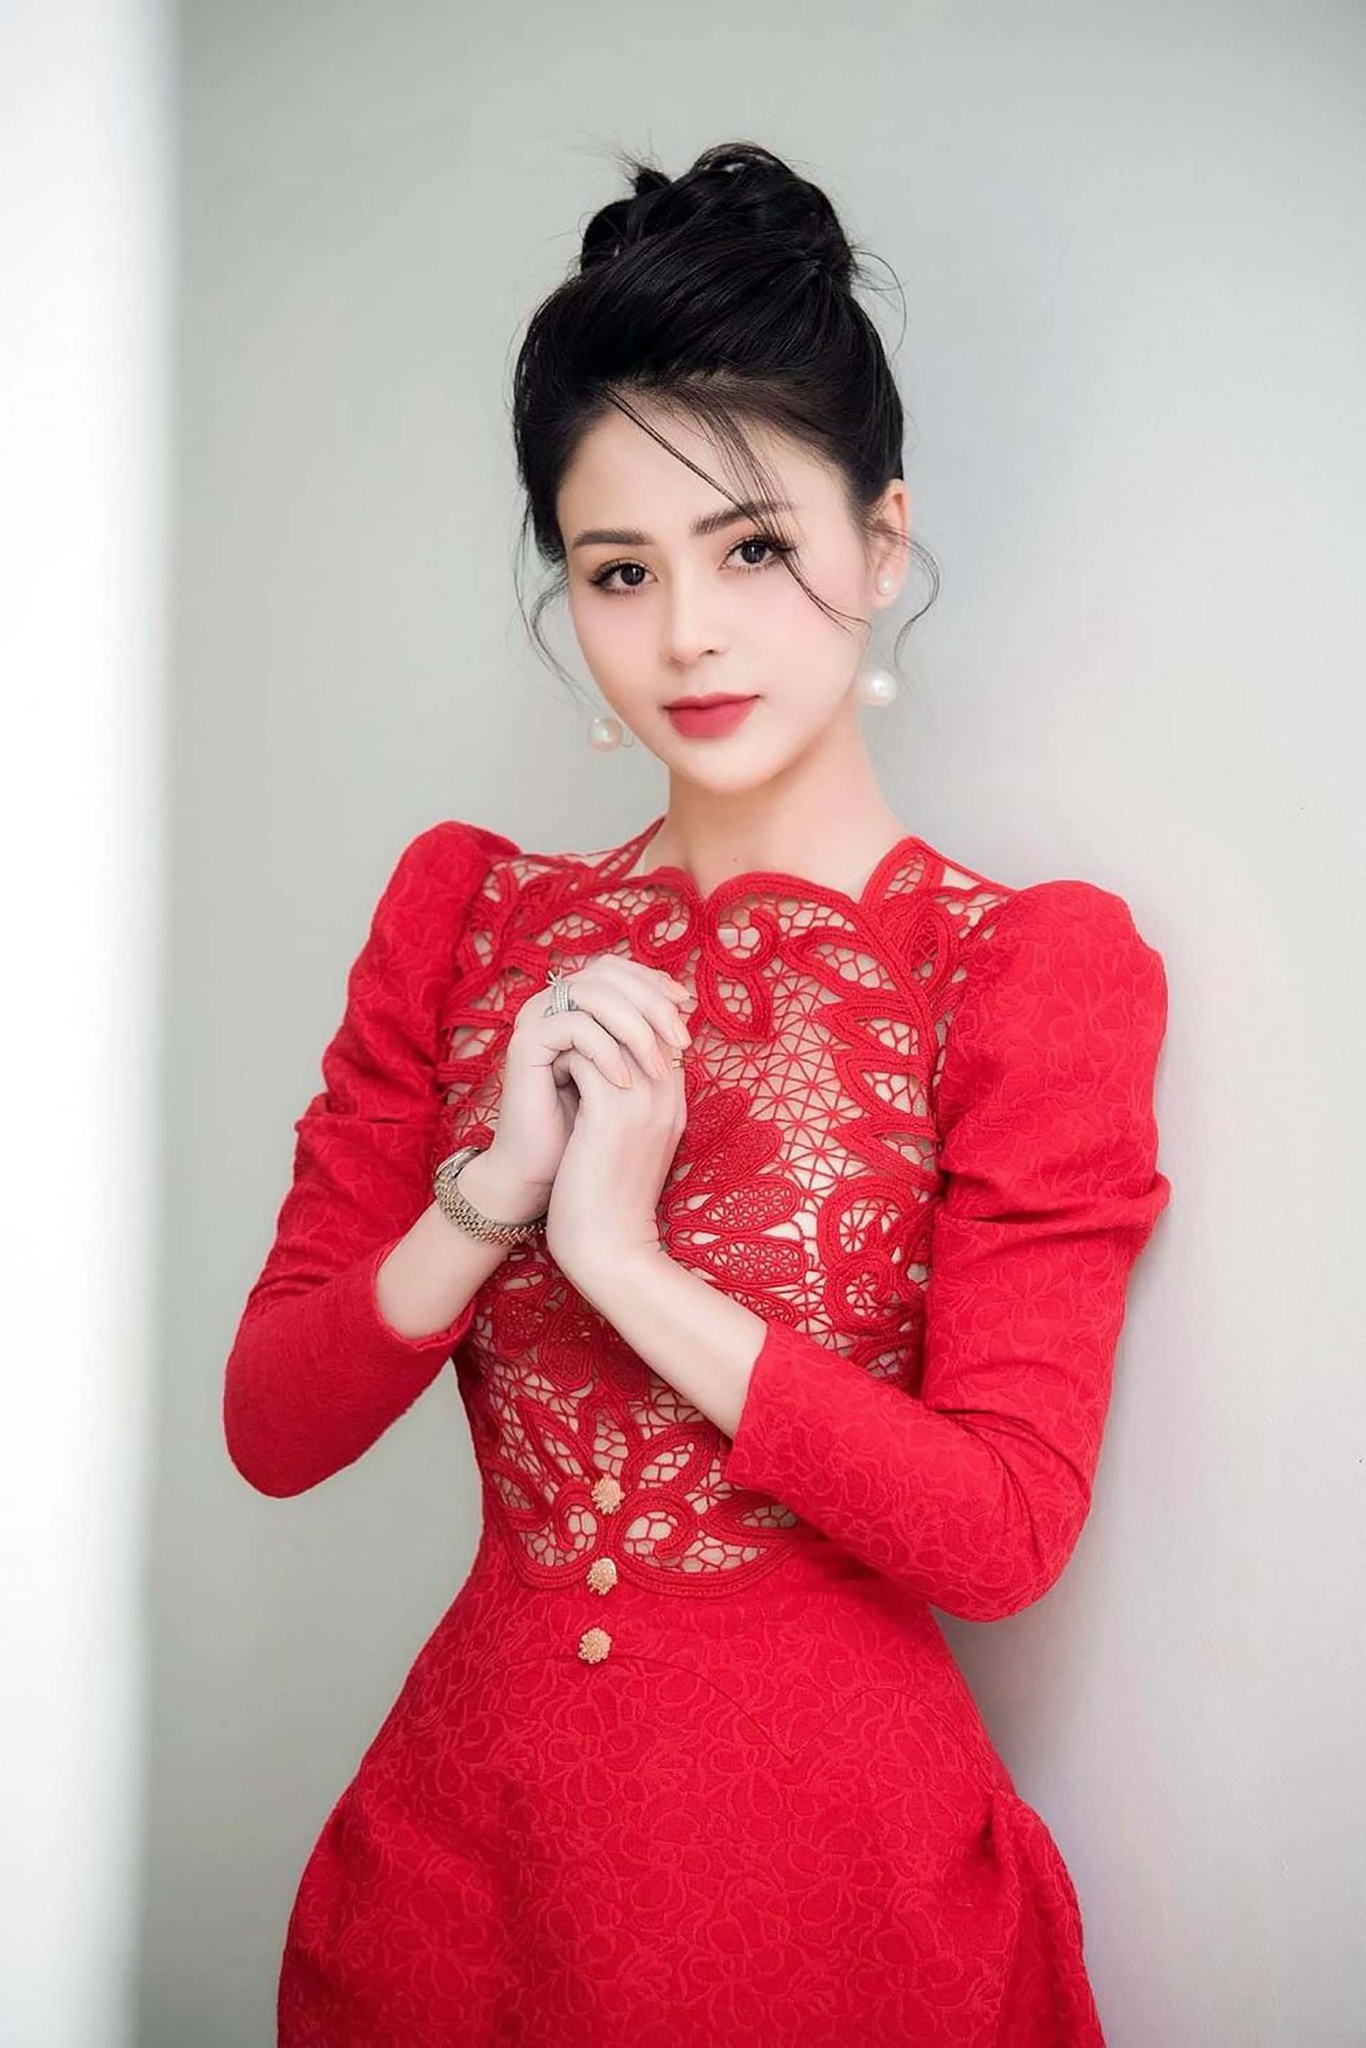 Bình luận phim Việt: ‘Tâng bốc’ diễn xuất Lương Thu Trang, có phải khán giả đang dễ dãi